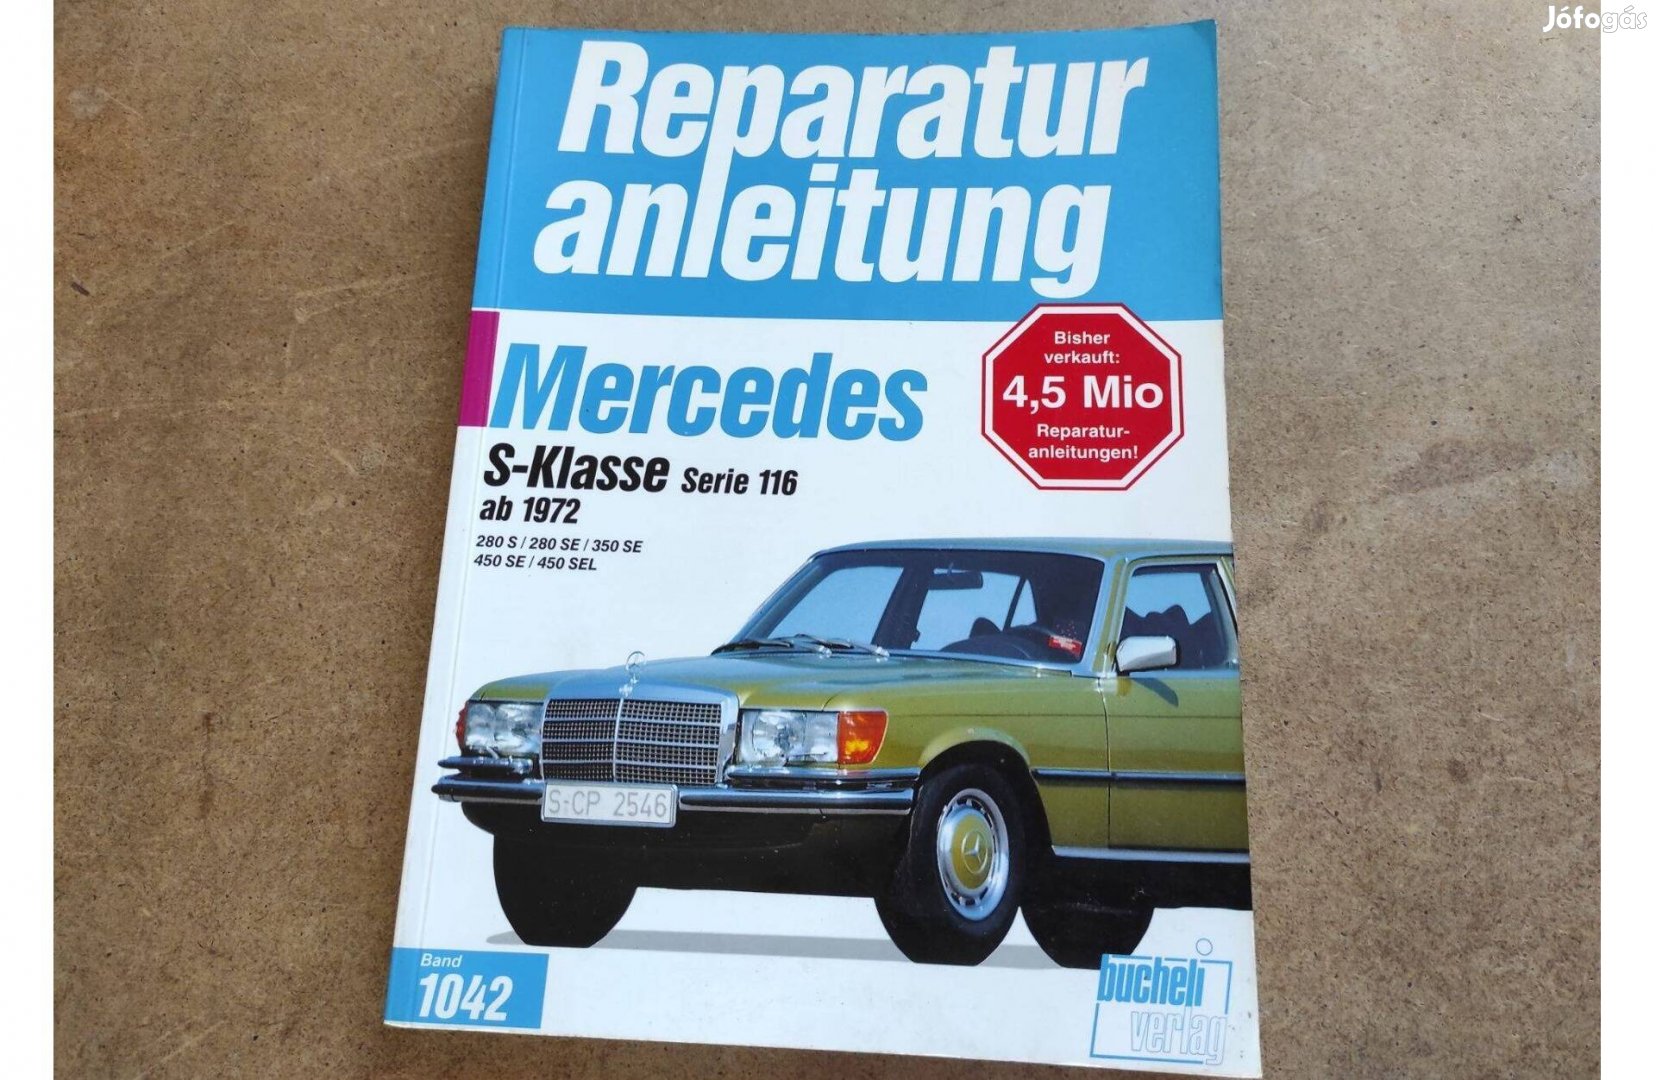 Mercedes S 116 javítási karbantartási könyv